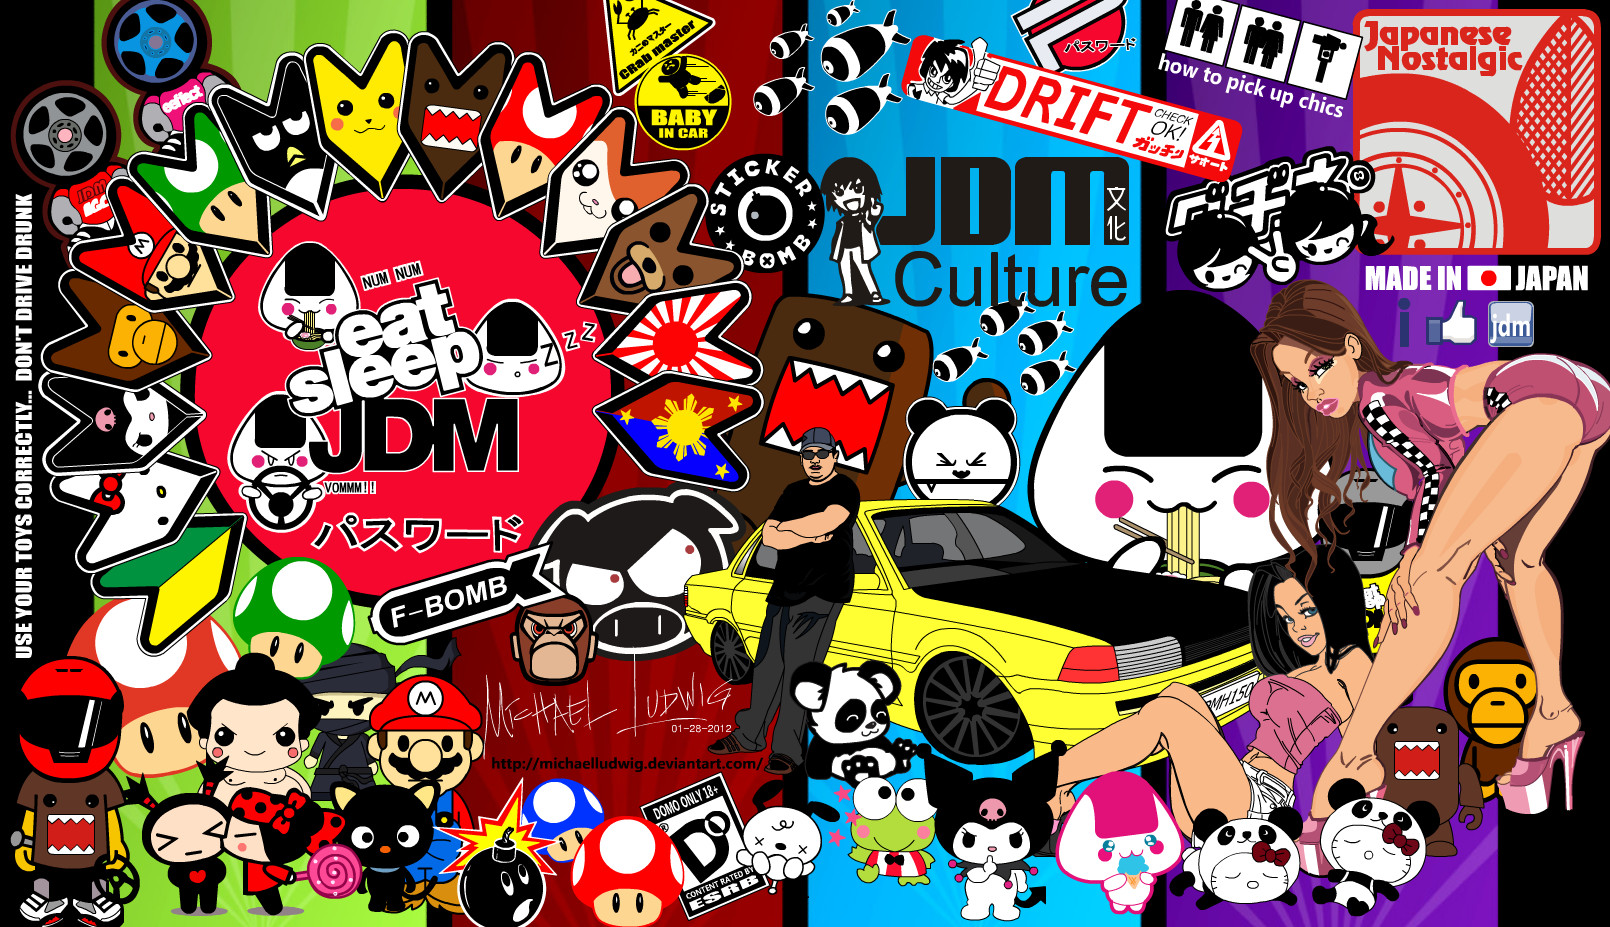 Jdm Sticker Sticker Bomb Red - HD Wallpaper 